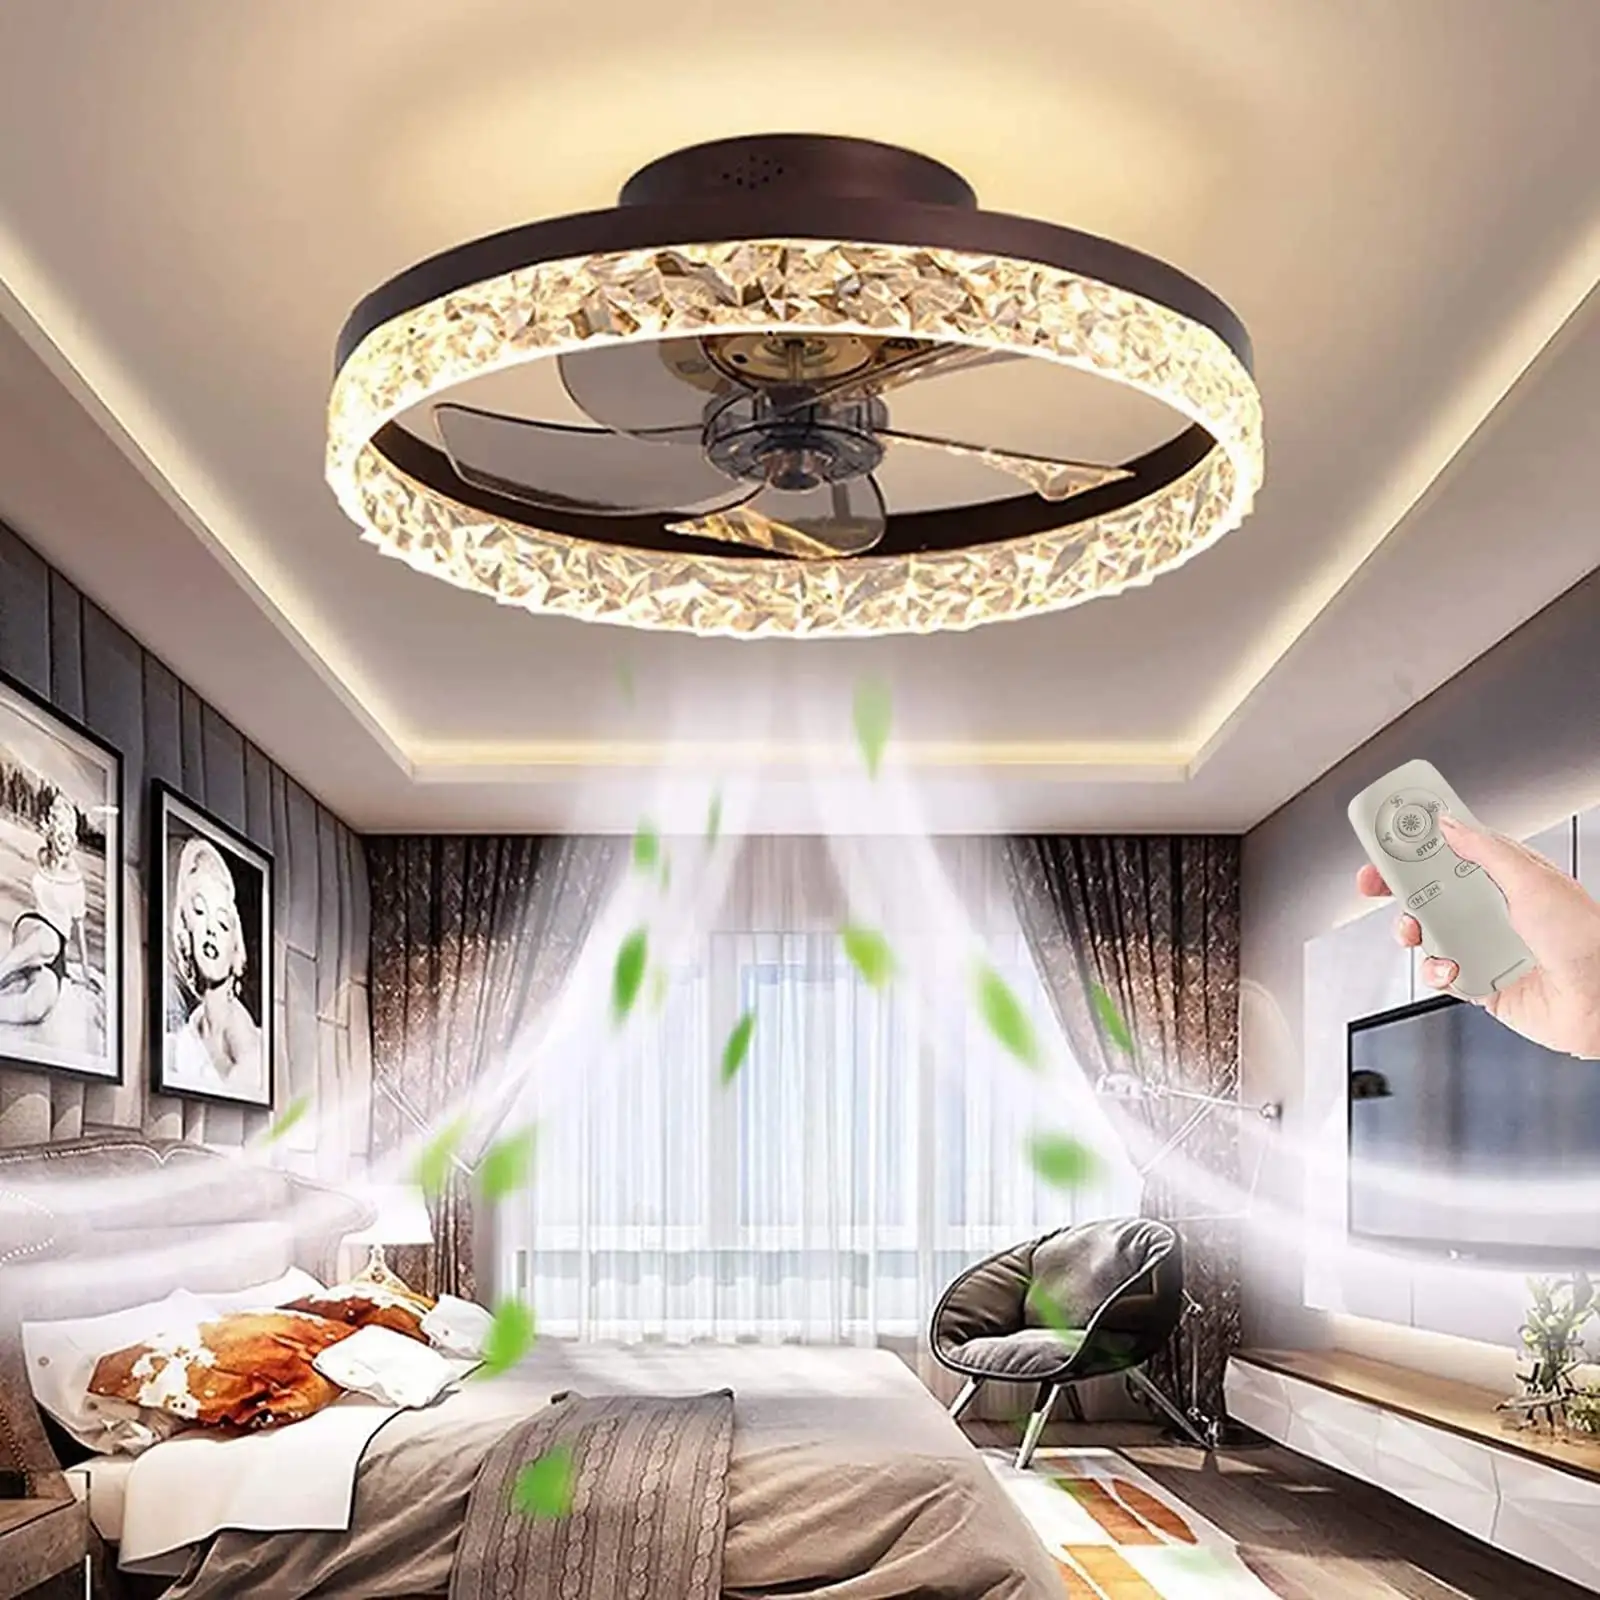 Iluminación moderna para dormitorio y hogar, control remoto regulable, redondo con aspas Abs, fandelier, lámpara de ventilador de techo Led Fandelier